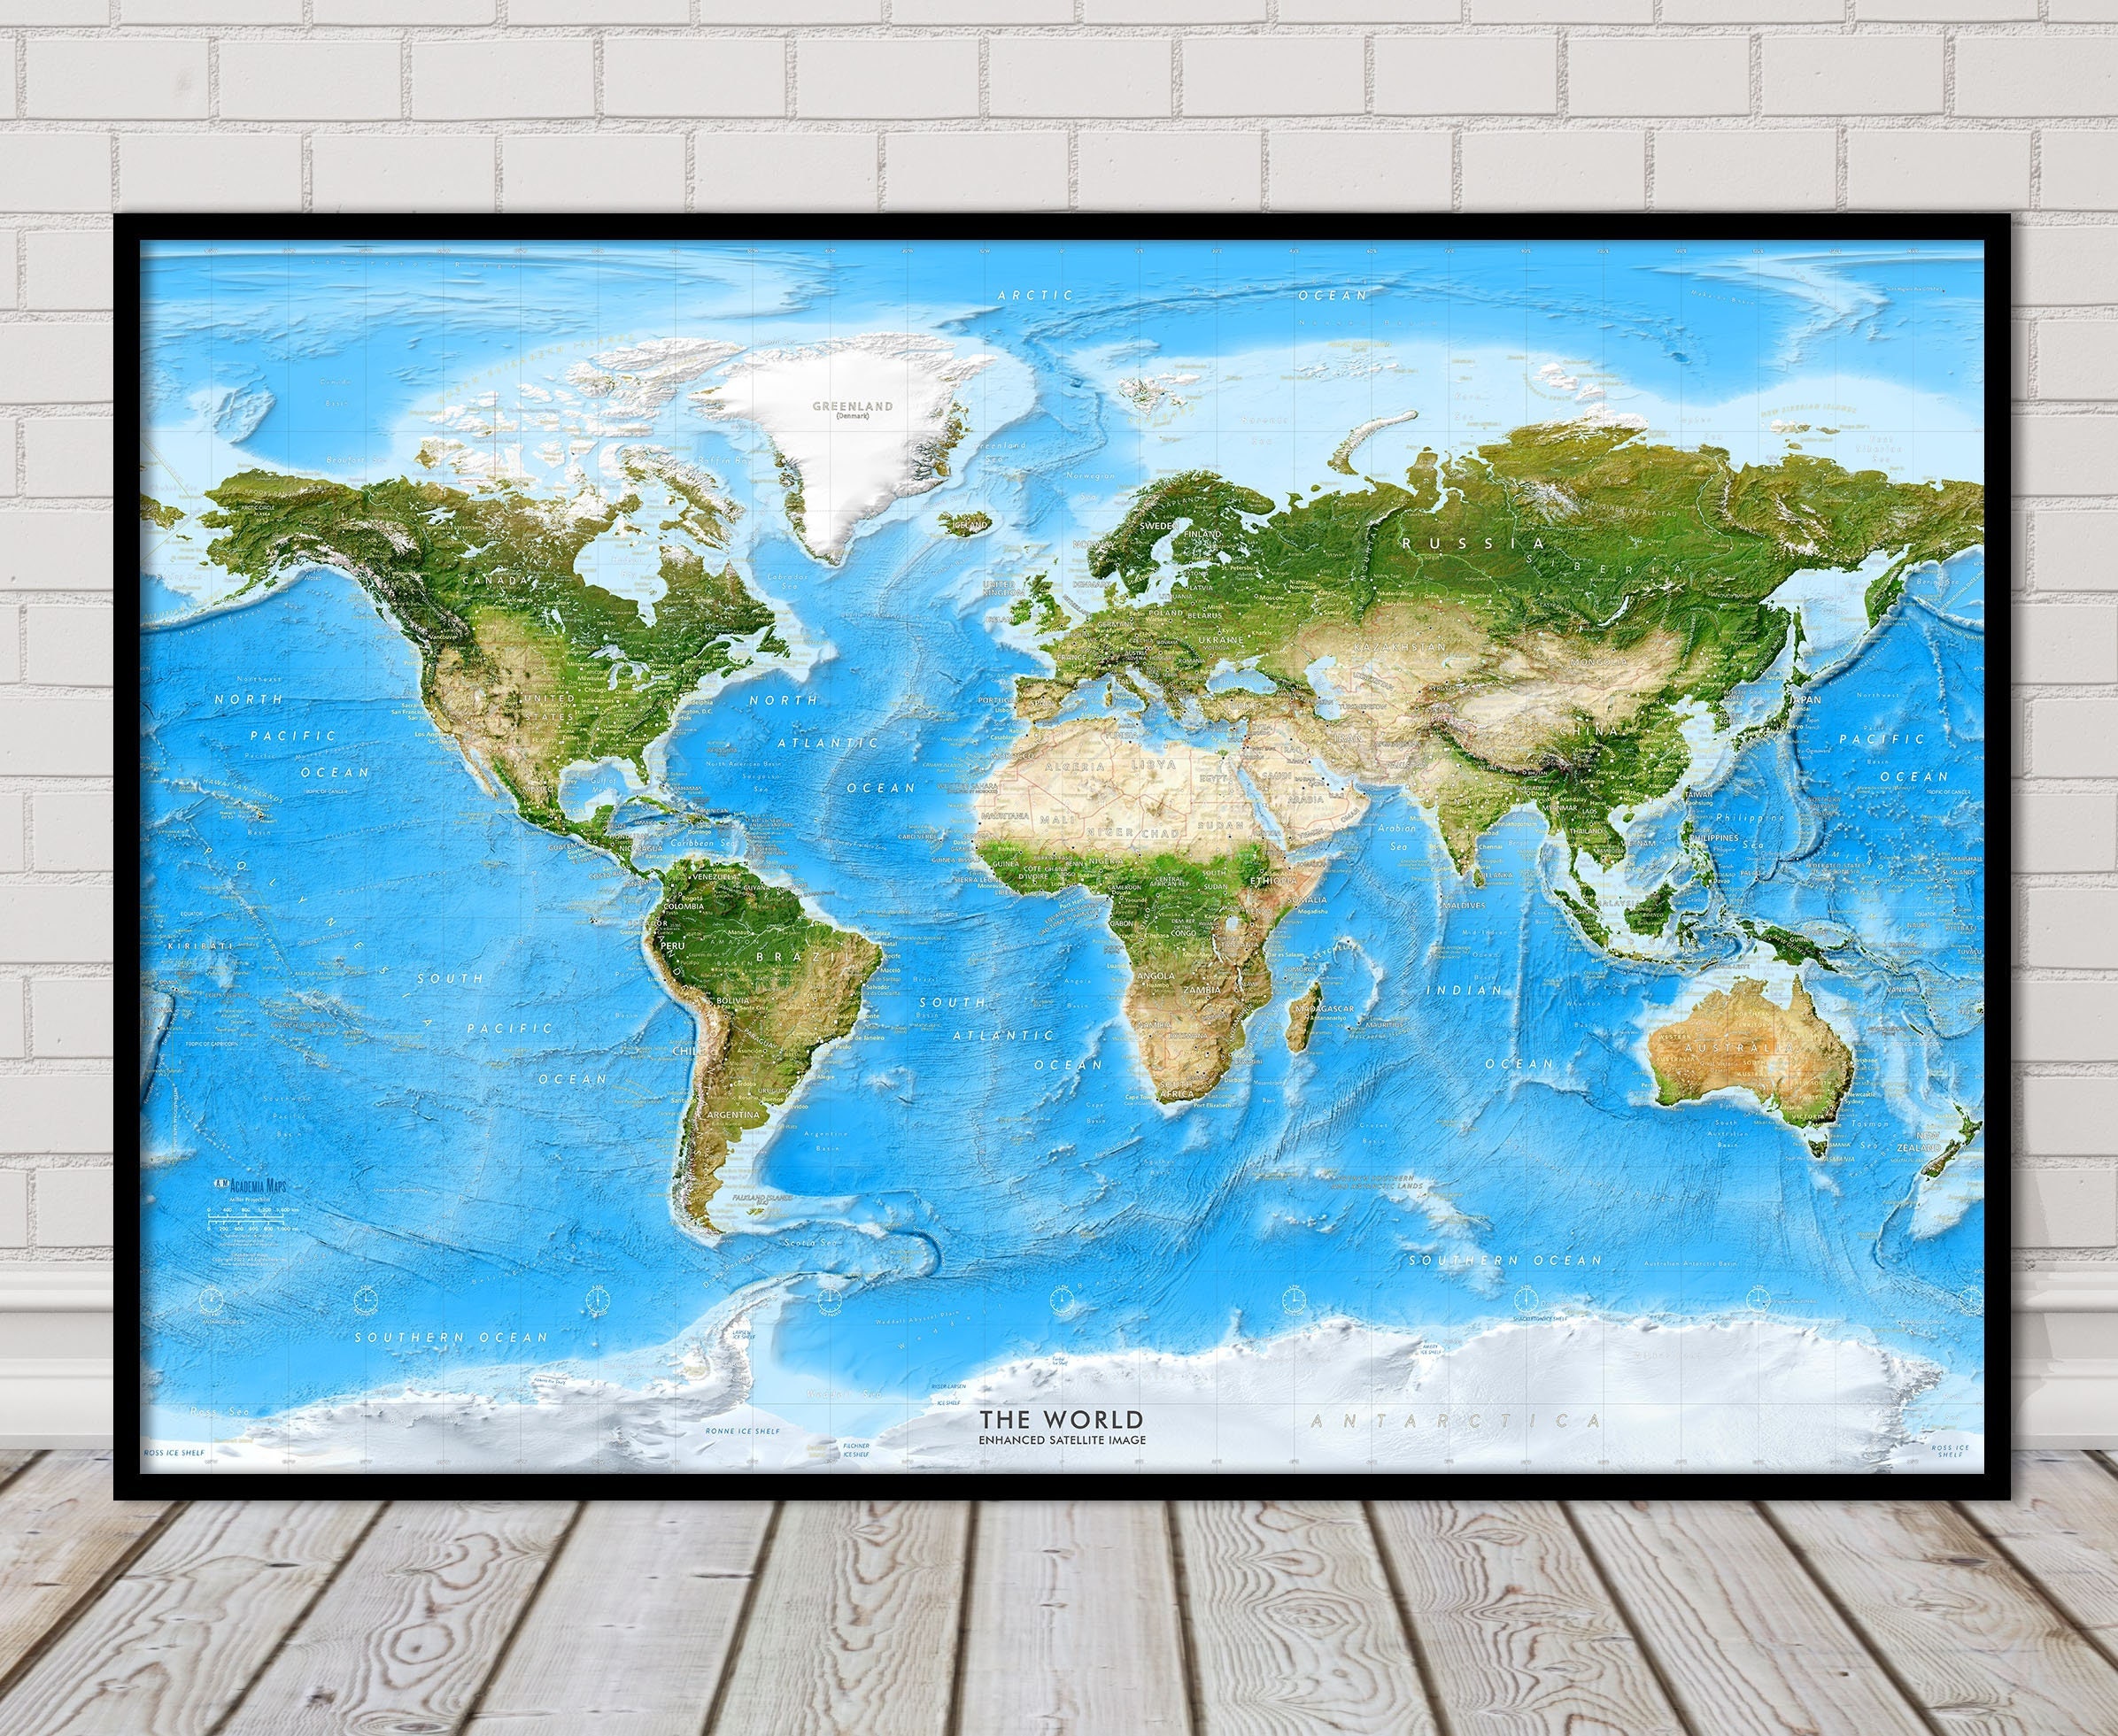 Mappa da parete con immagine satellitare del mondo migliorata